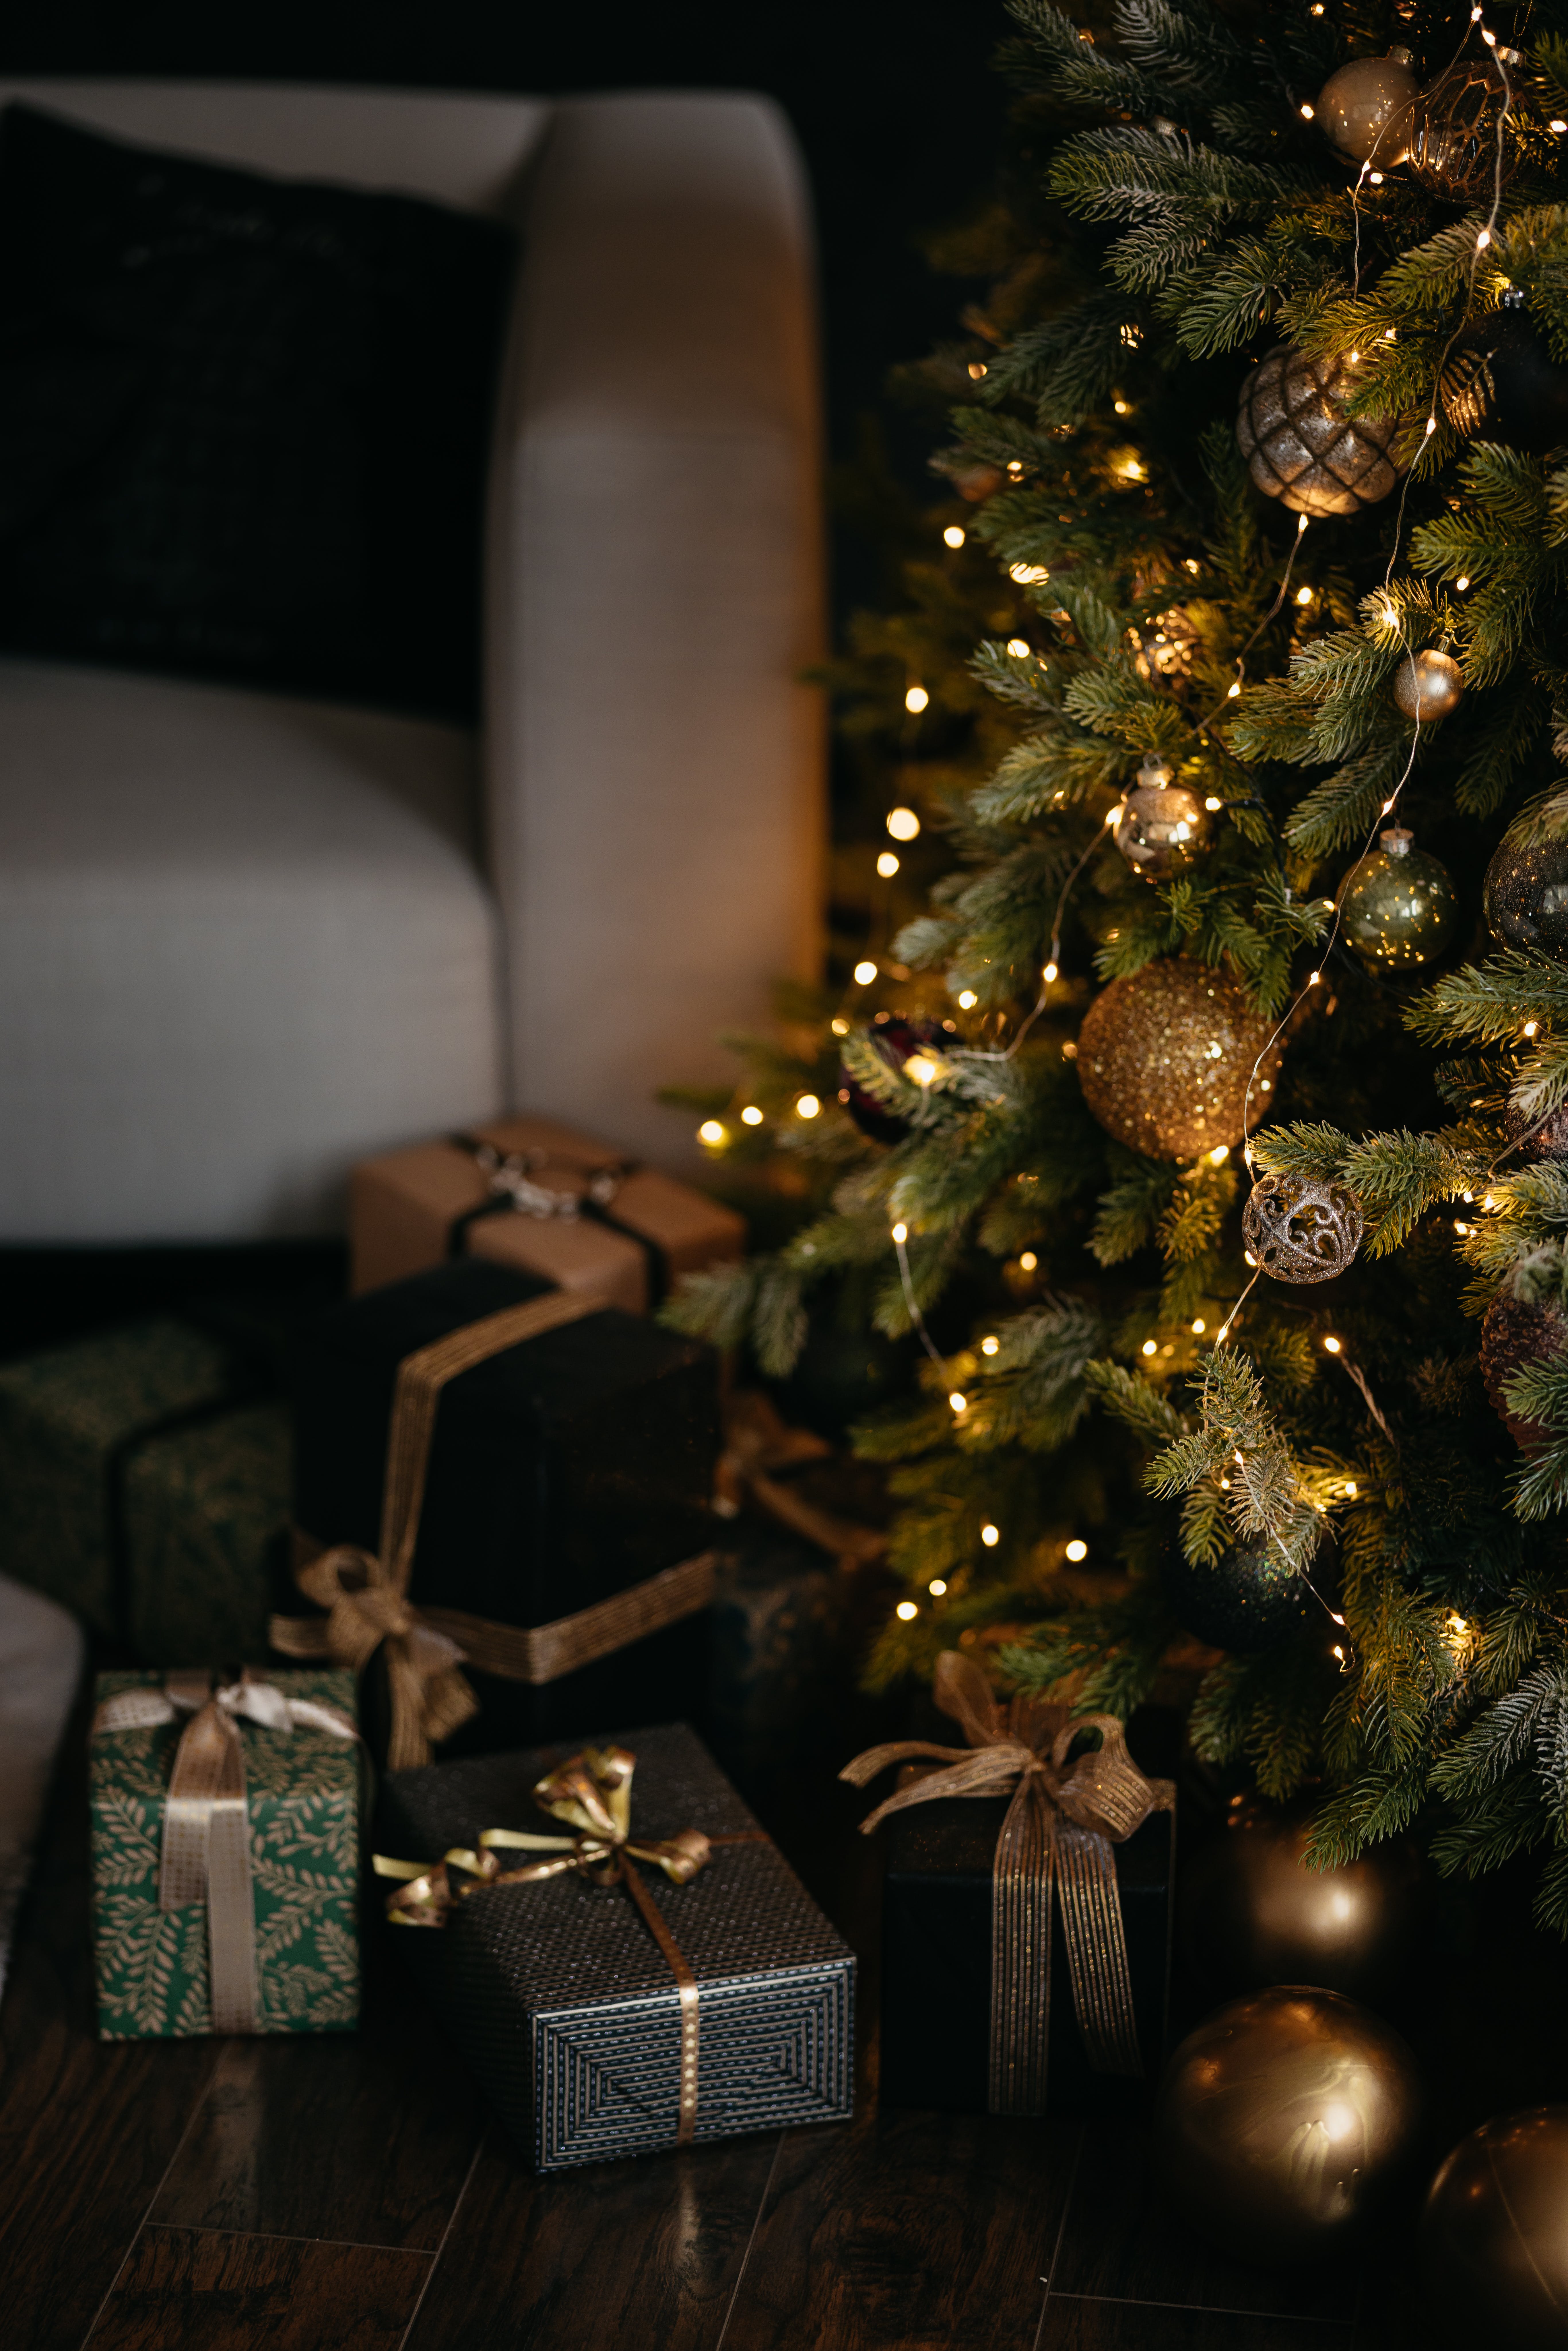 Un arbre de Noël et des cadeaux | Source : Pexels